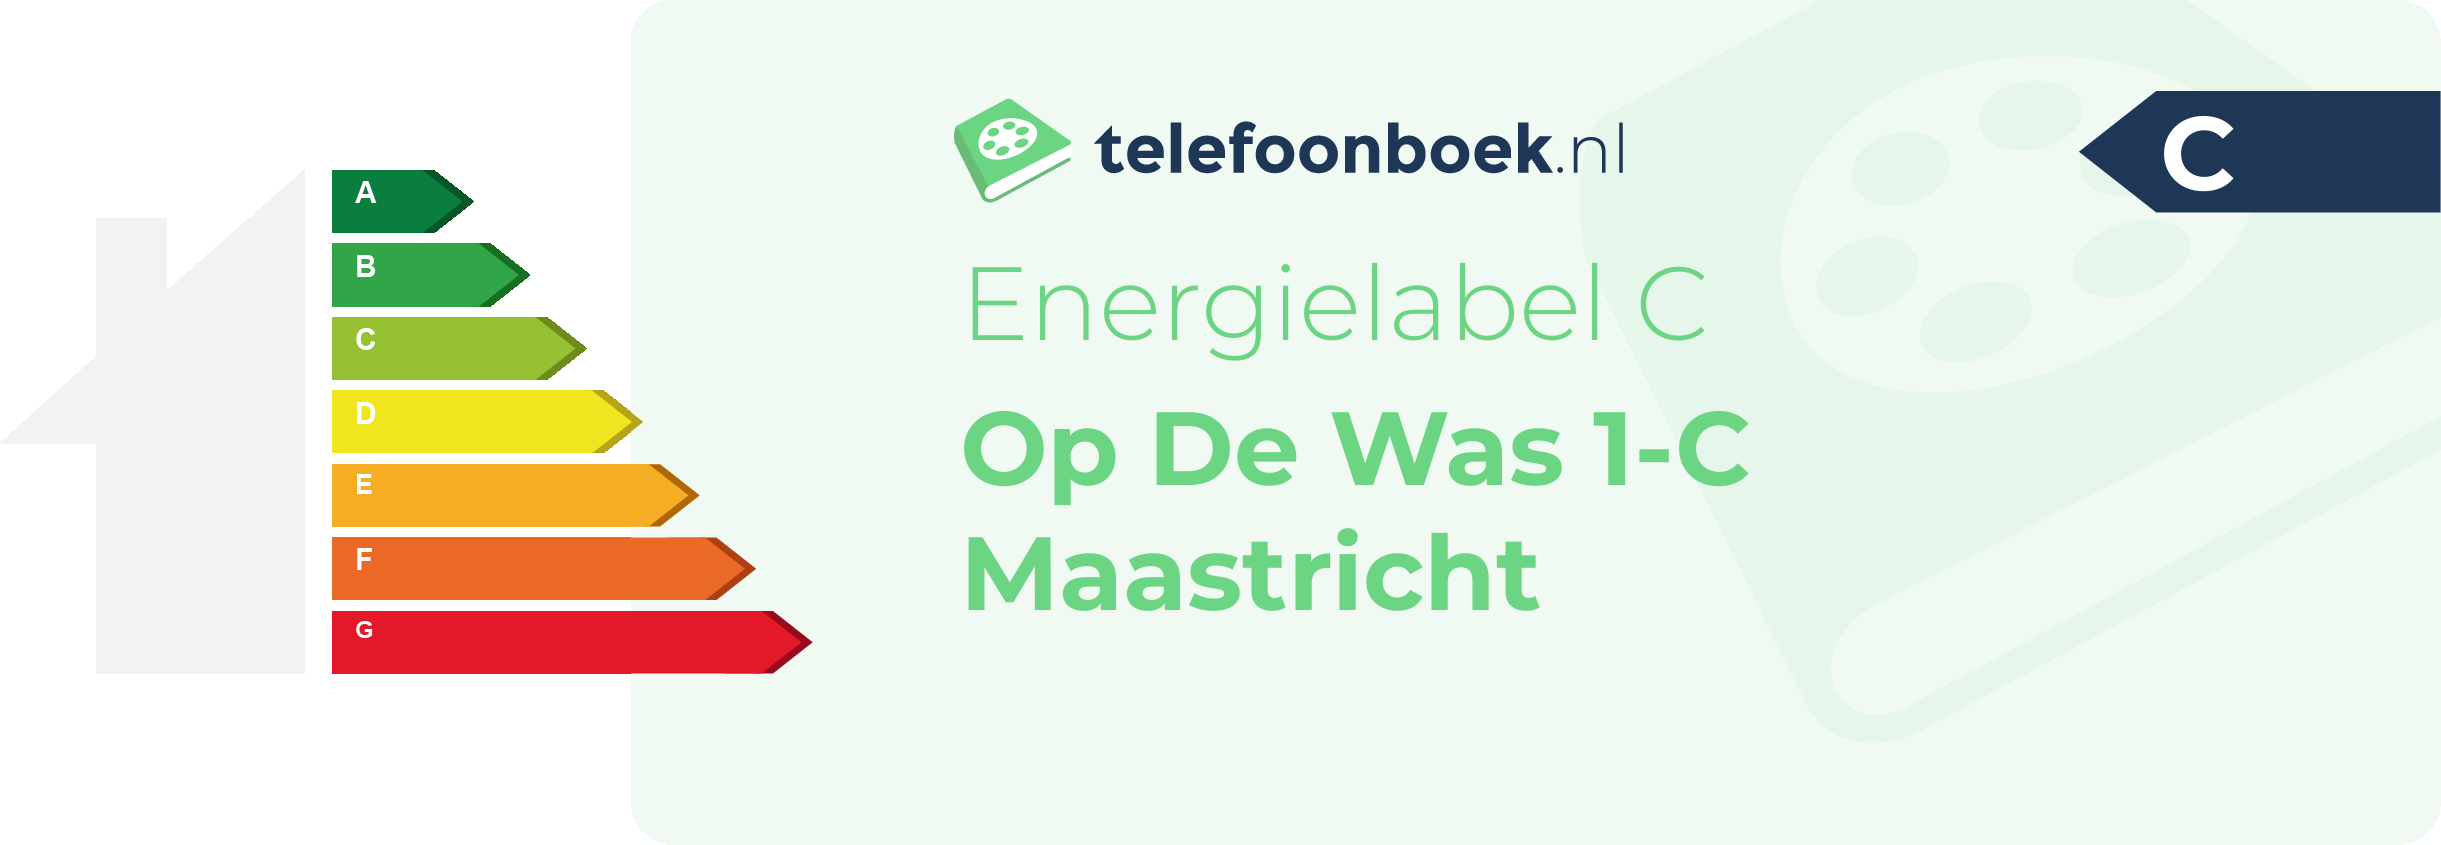 Energielabel Op De Was 1-C Maastricht